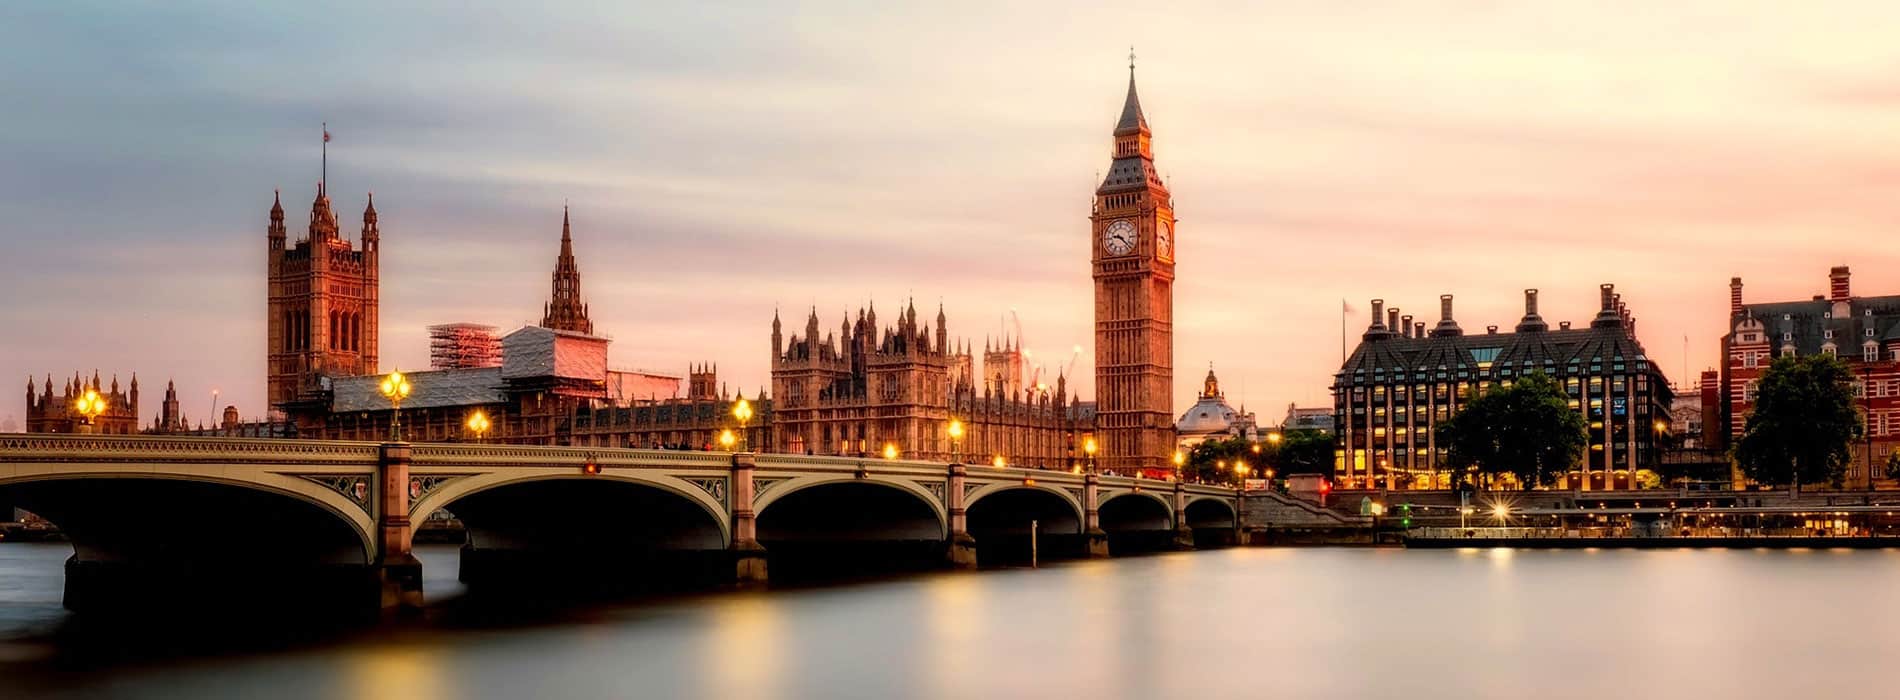 Pont de Westminster et Big Ben à Londres à découvrir lors de votre séjour linguistique en Angleterre